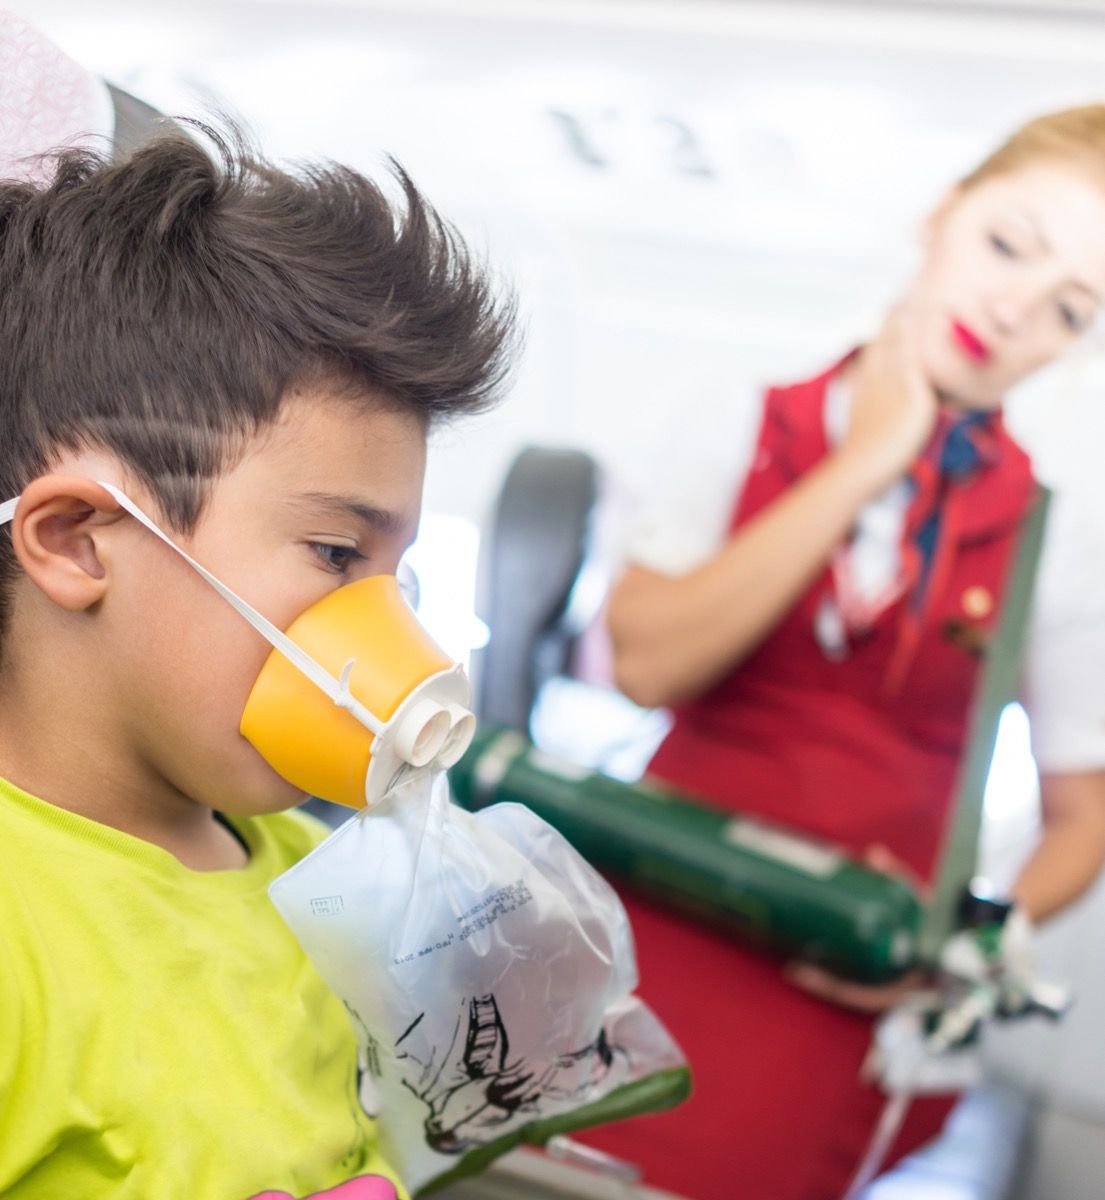 Chico en el asiento del avión con máscara de oxígeno mientras el asistente de vuelo mira, molesto asistente de vuelo